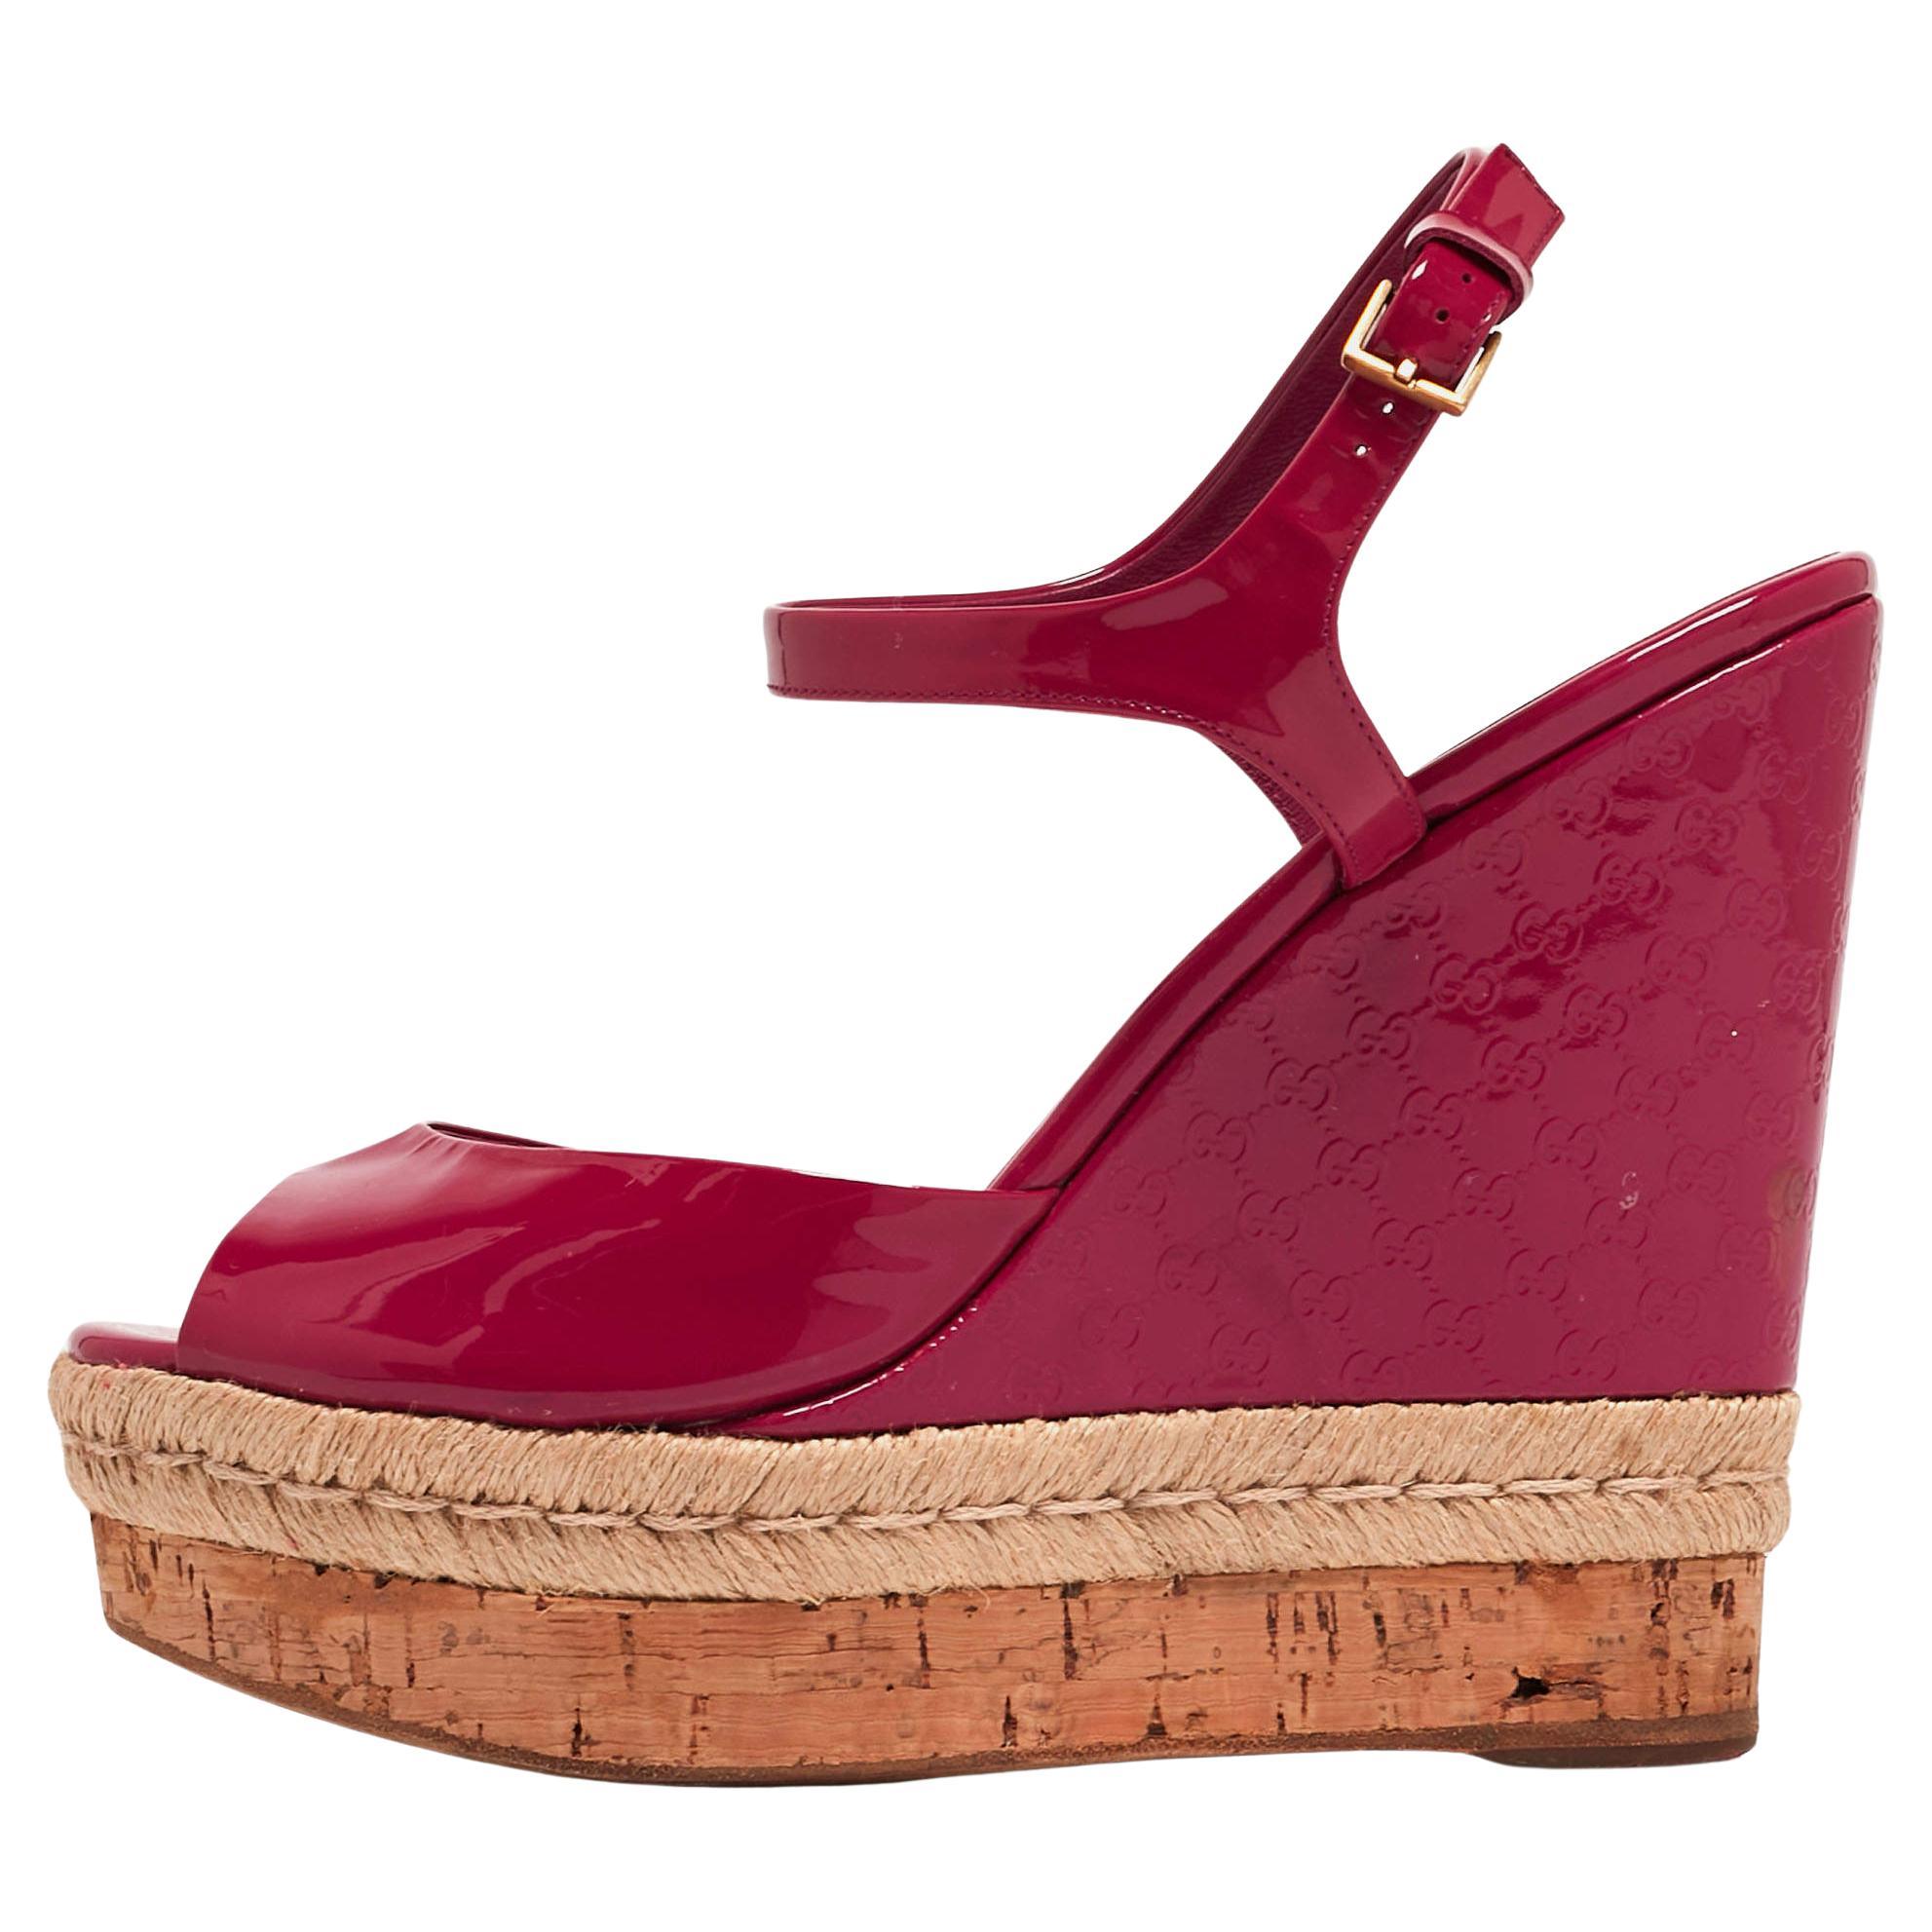 Sandales compensées Hollie Gucci en cuir verni rose, taille 39,5 en vente